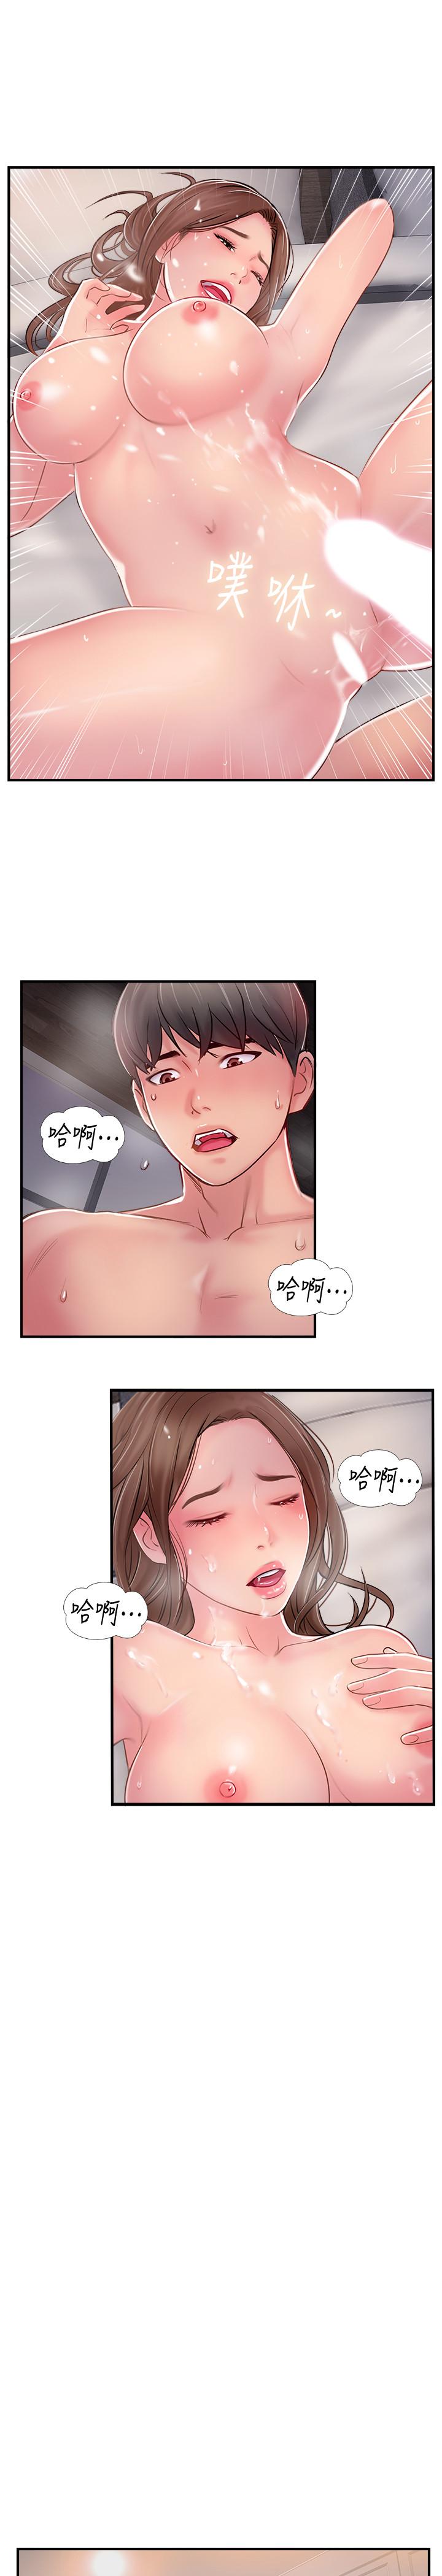 韩国污漫画 完美新伴侶 第16话-初尝偷情的快感 21